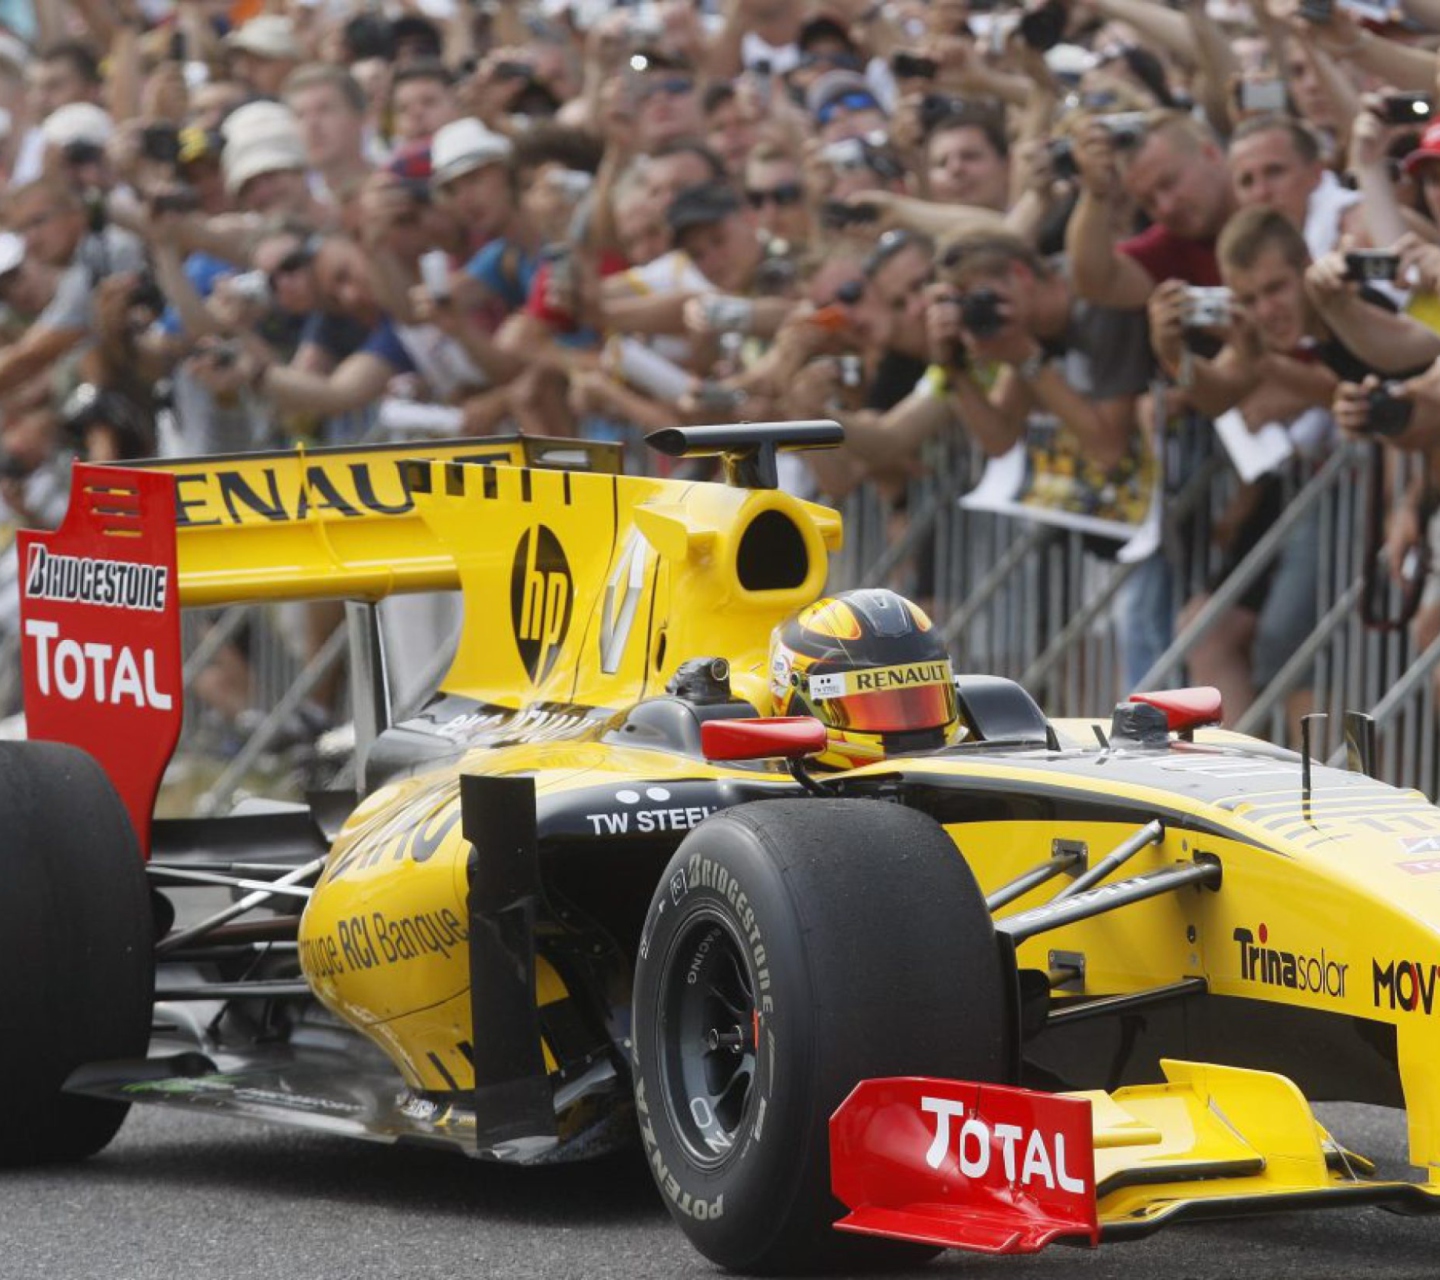 Das N-Gine Renault F1 Team Show, Robert Kubica Wallpaper 1440x1280